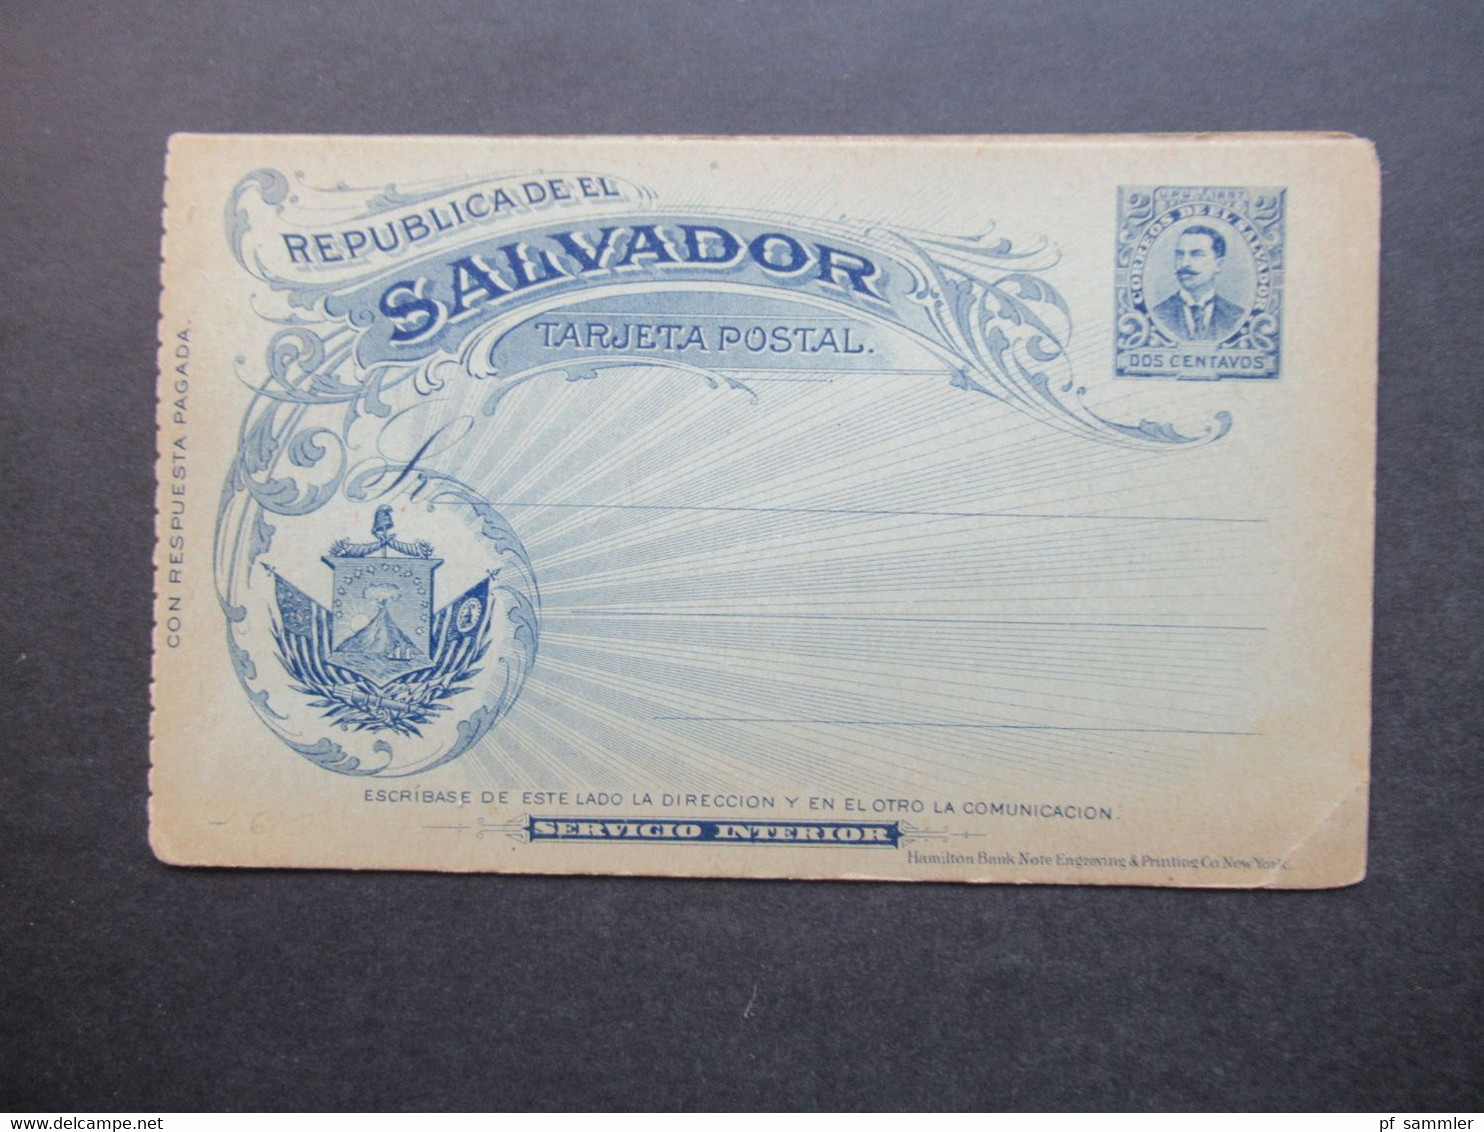 El Salvador Ganzsache / Doppelkarte Ungebraucht! Tarjeta Postal Servicio Interior Hamilton Bank Note Engraving - Salvador